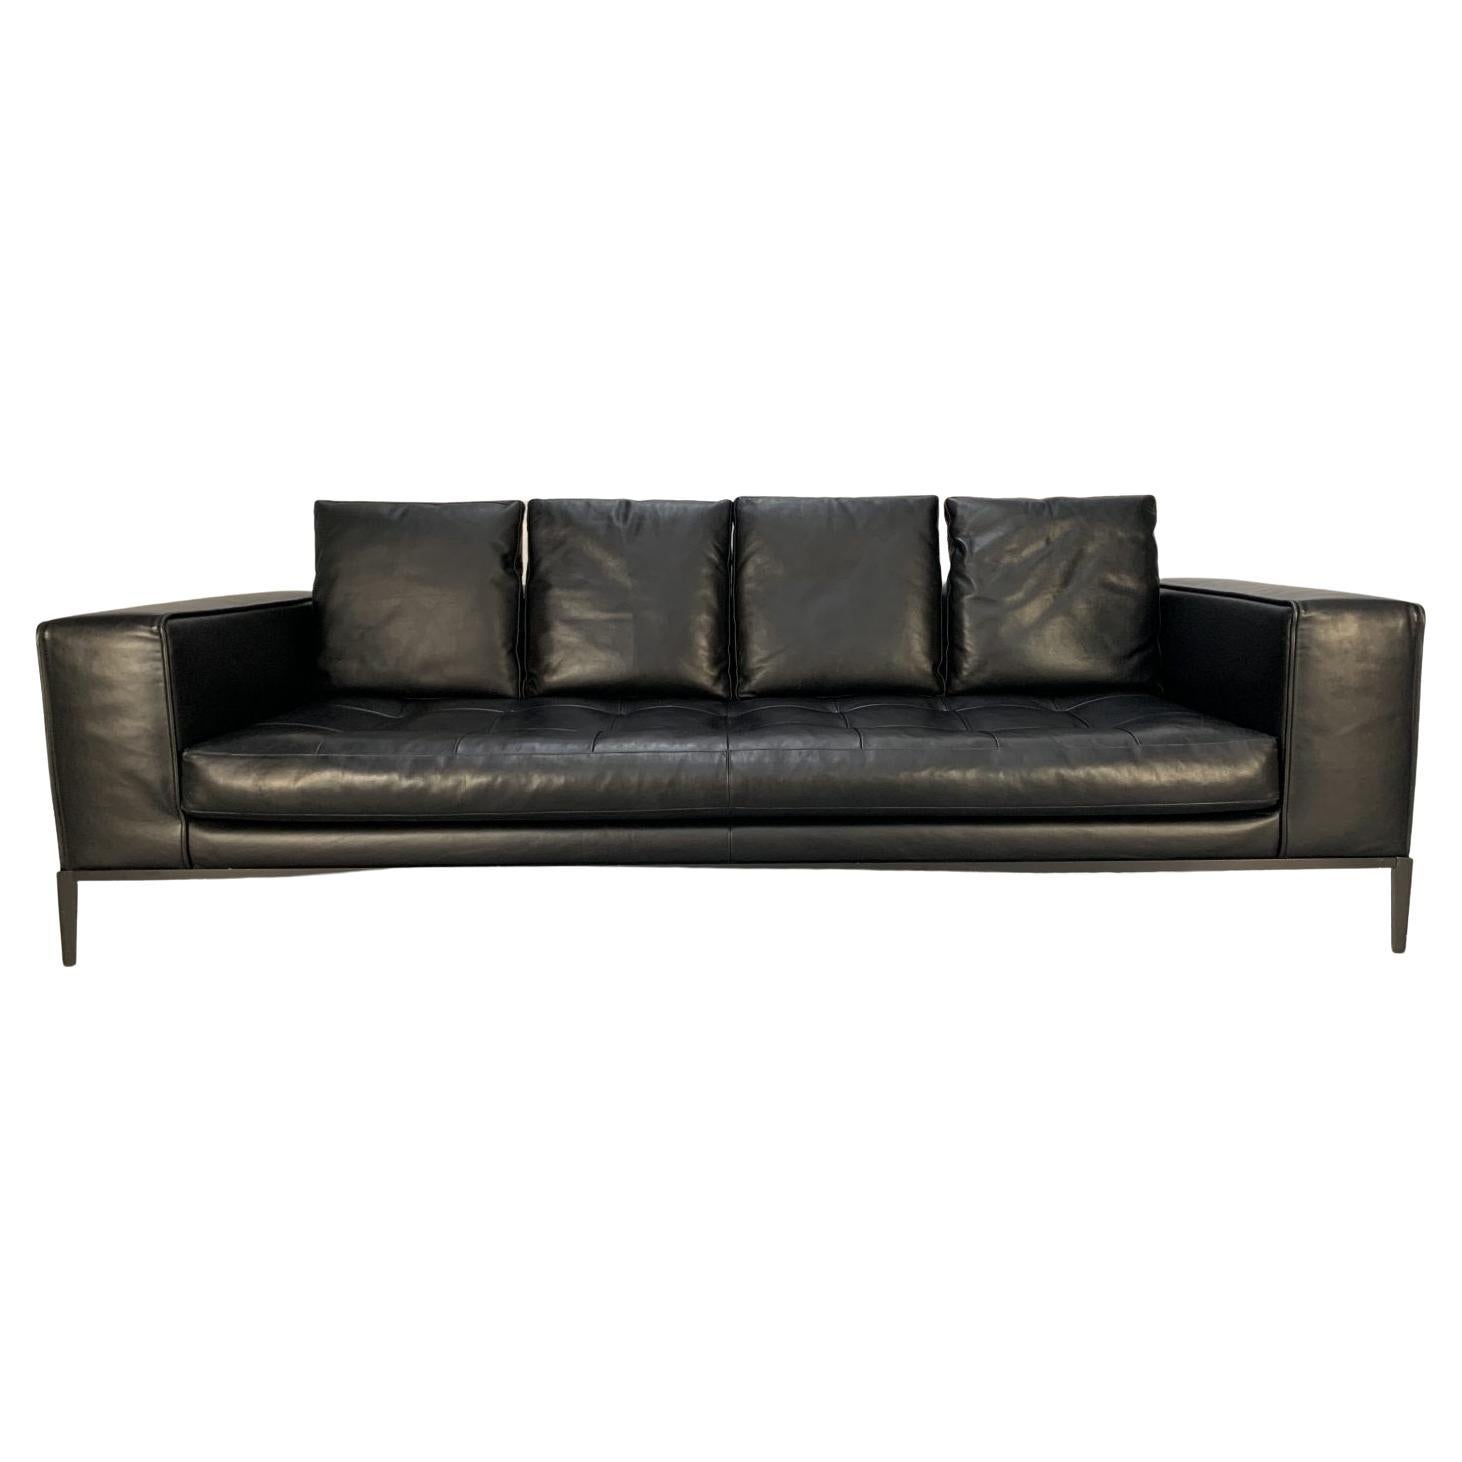 Sublime B&B Italia “Simplex ” 4-Seat Sofa in Black “Gamma” Leather